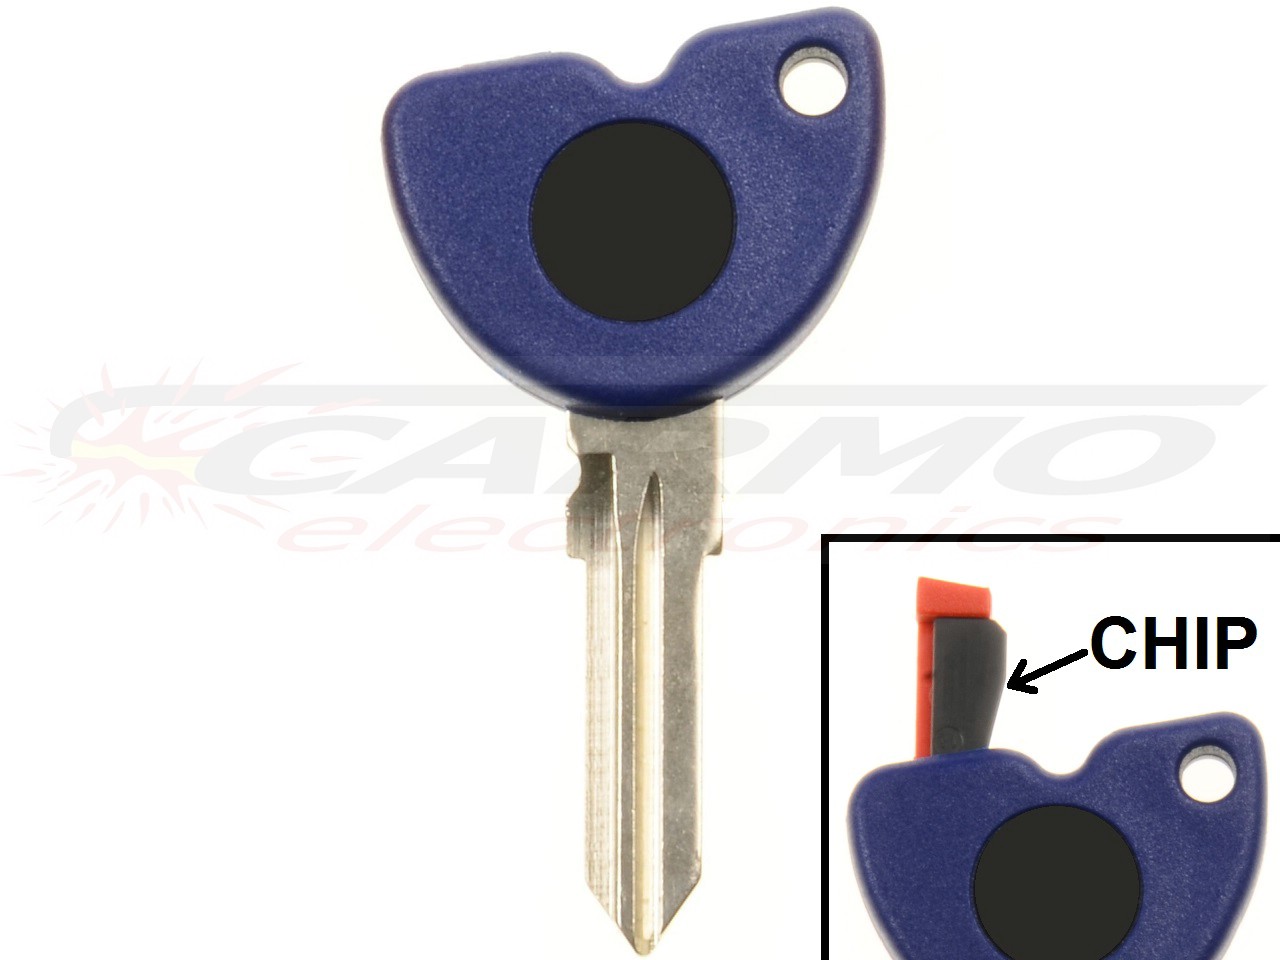 Piaggio/Vespa/Gilera chip key - Click Image to Close